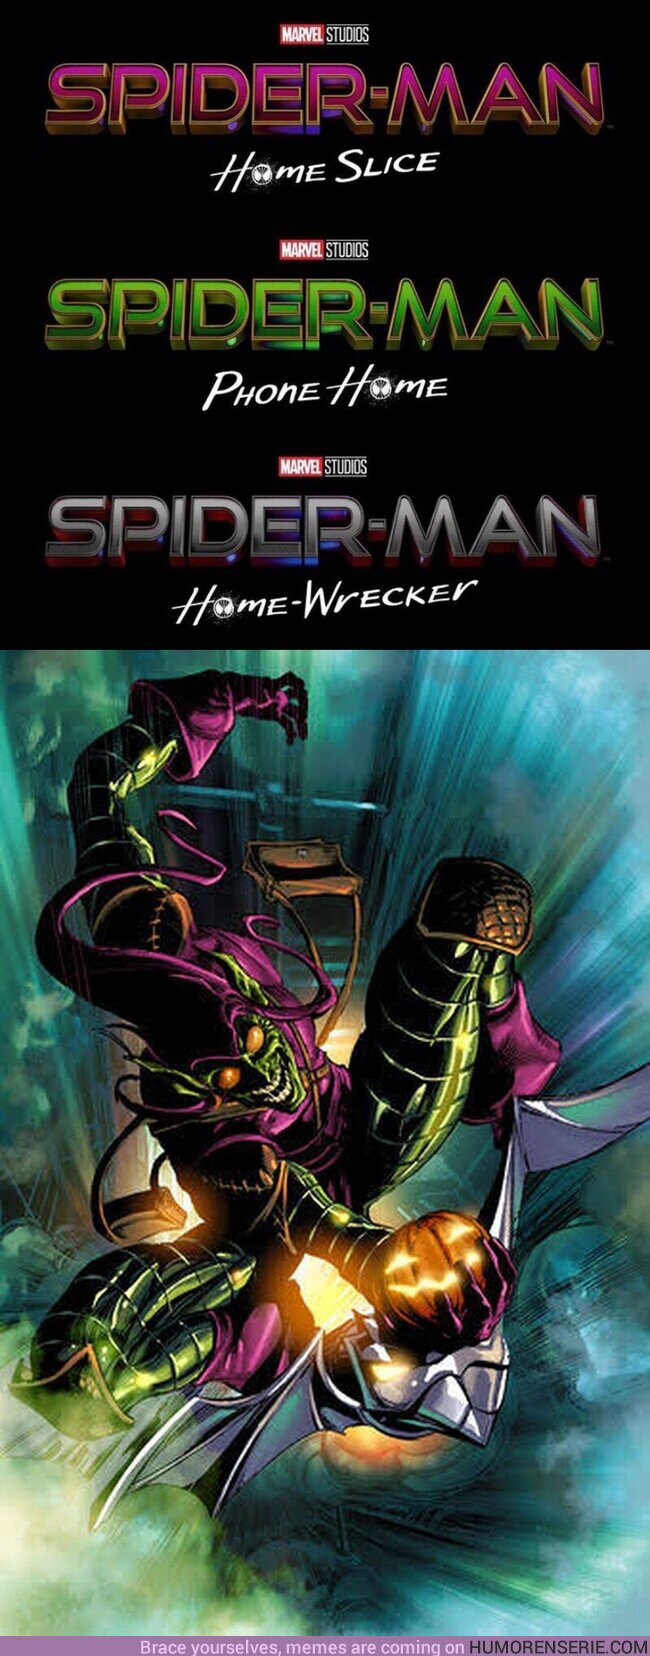 67420 - Los colores de los títulos falsos de #SpiderMan3 tienen los mismos colores que El Duende Verde en los cómics. ?  , por @Septimofriki